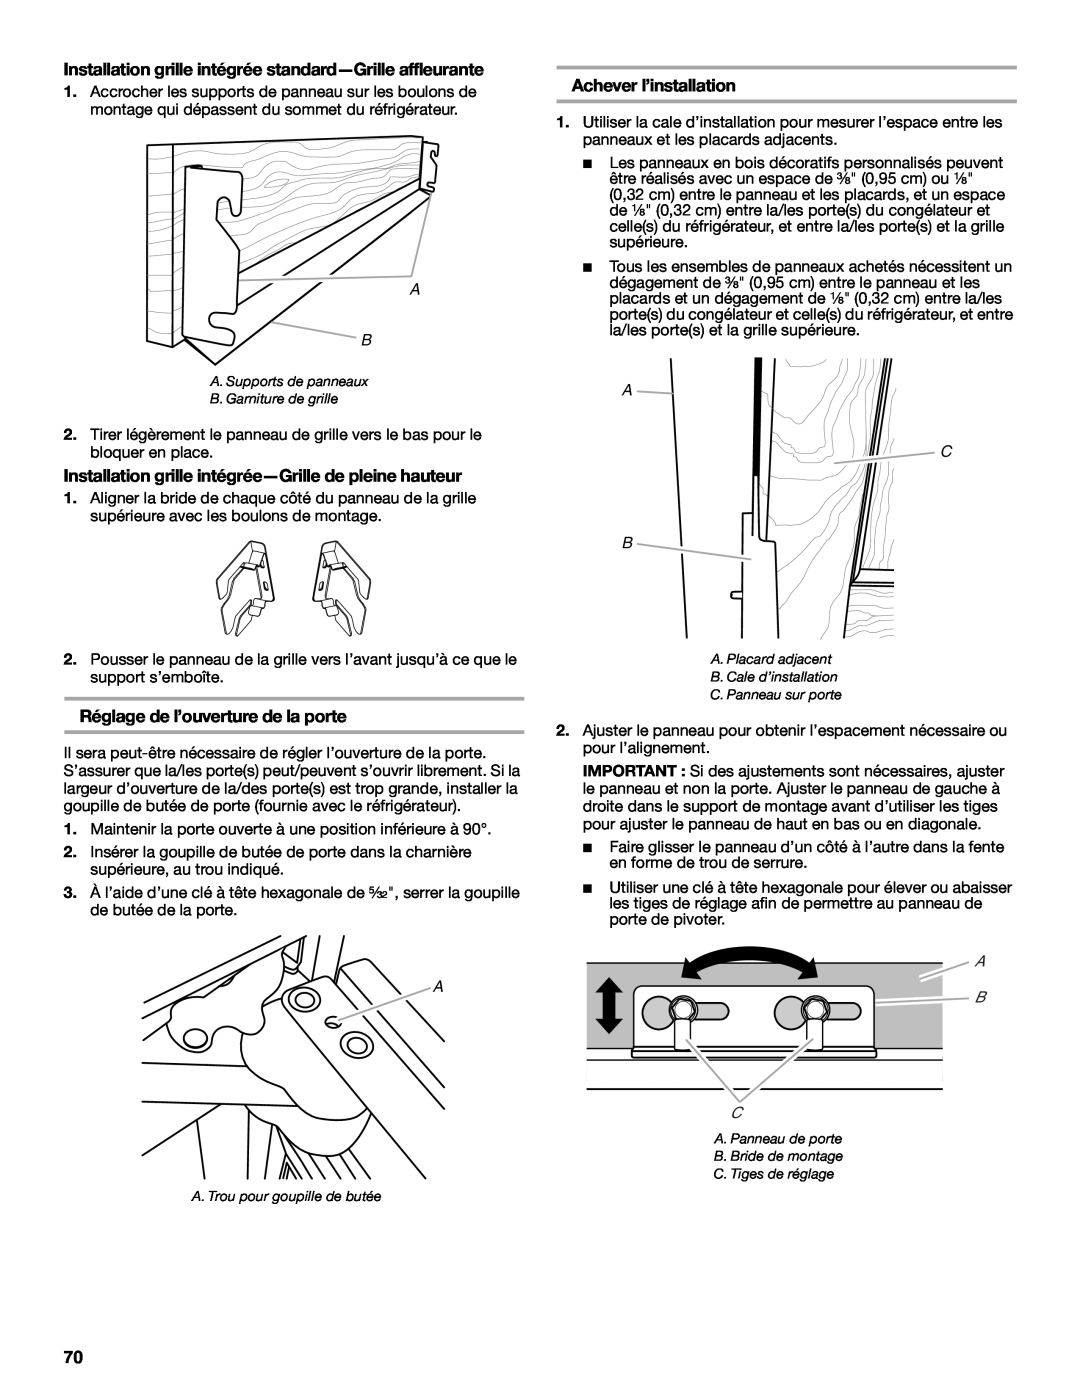 Jenn-Air W10379136B manual Réglage de l’ouverture de la porte, Achever l’installation, A C B, A B C, C. Panneau sur porte 